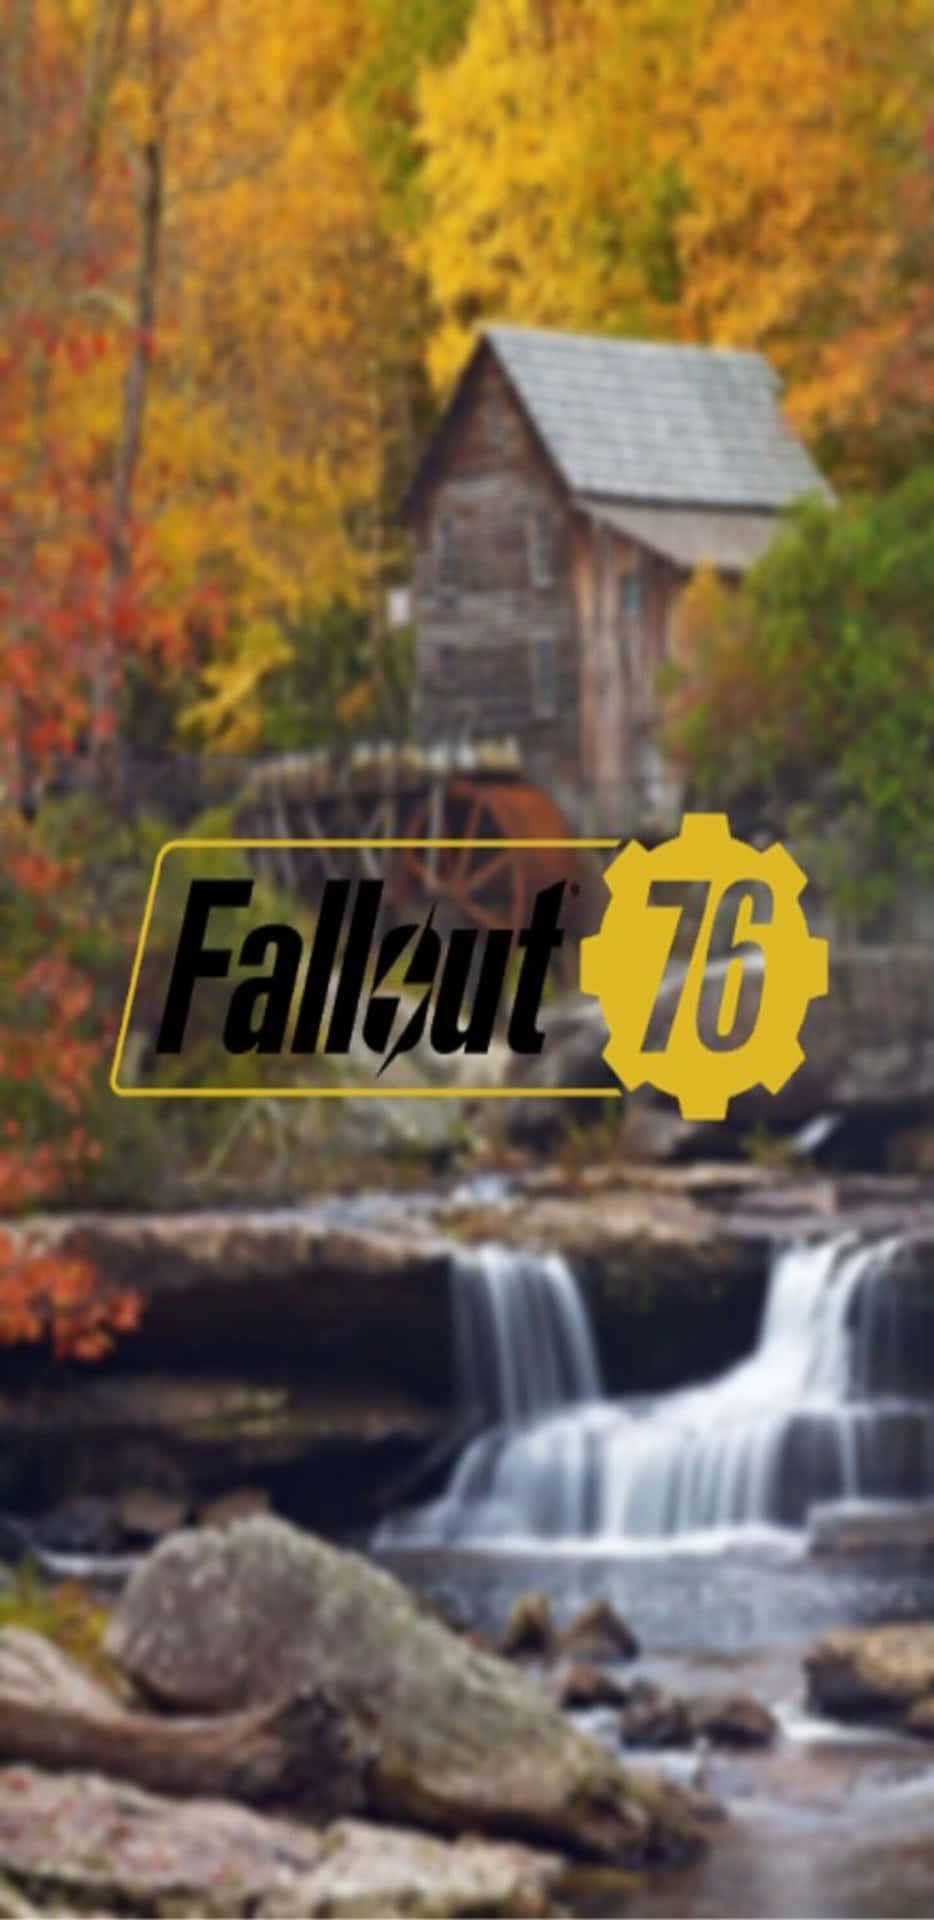 Historiskkrigföring Blir Levande På Pixel 3xl Med Fallout 76 Som Bakgrundsbild.